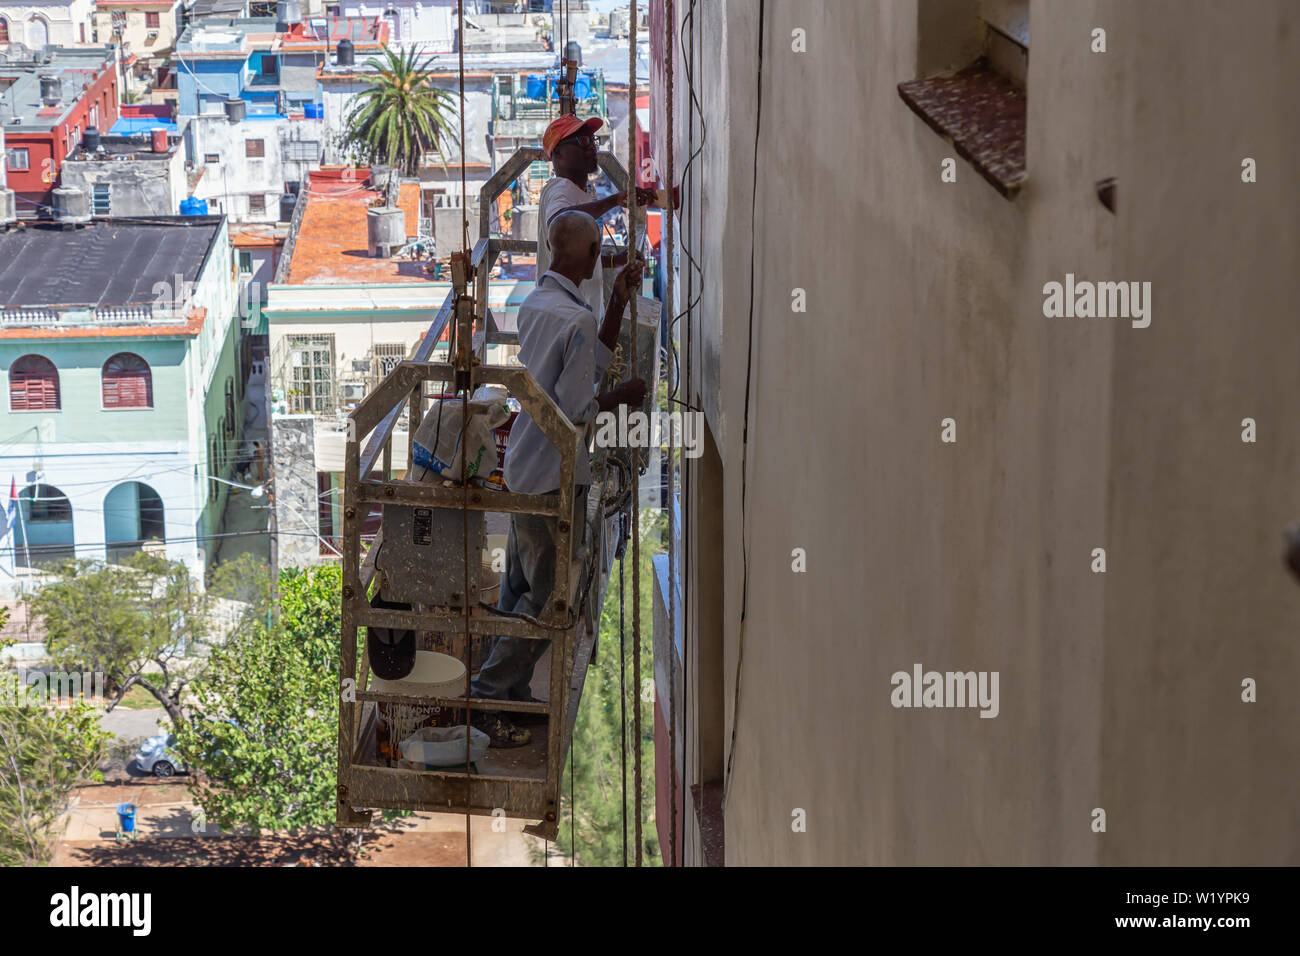 L'Avana, Cuba - Maggio 21, 2019: uomo cubano sta lavorando su una fase di rotazione sul lato di un edificio nella città dell'Avana durante una calda giornata di sole. Foto Stock